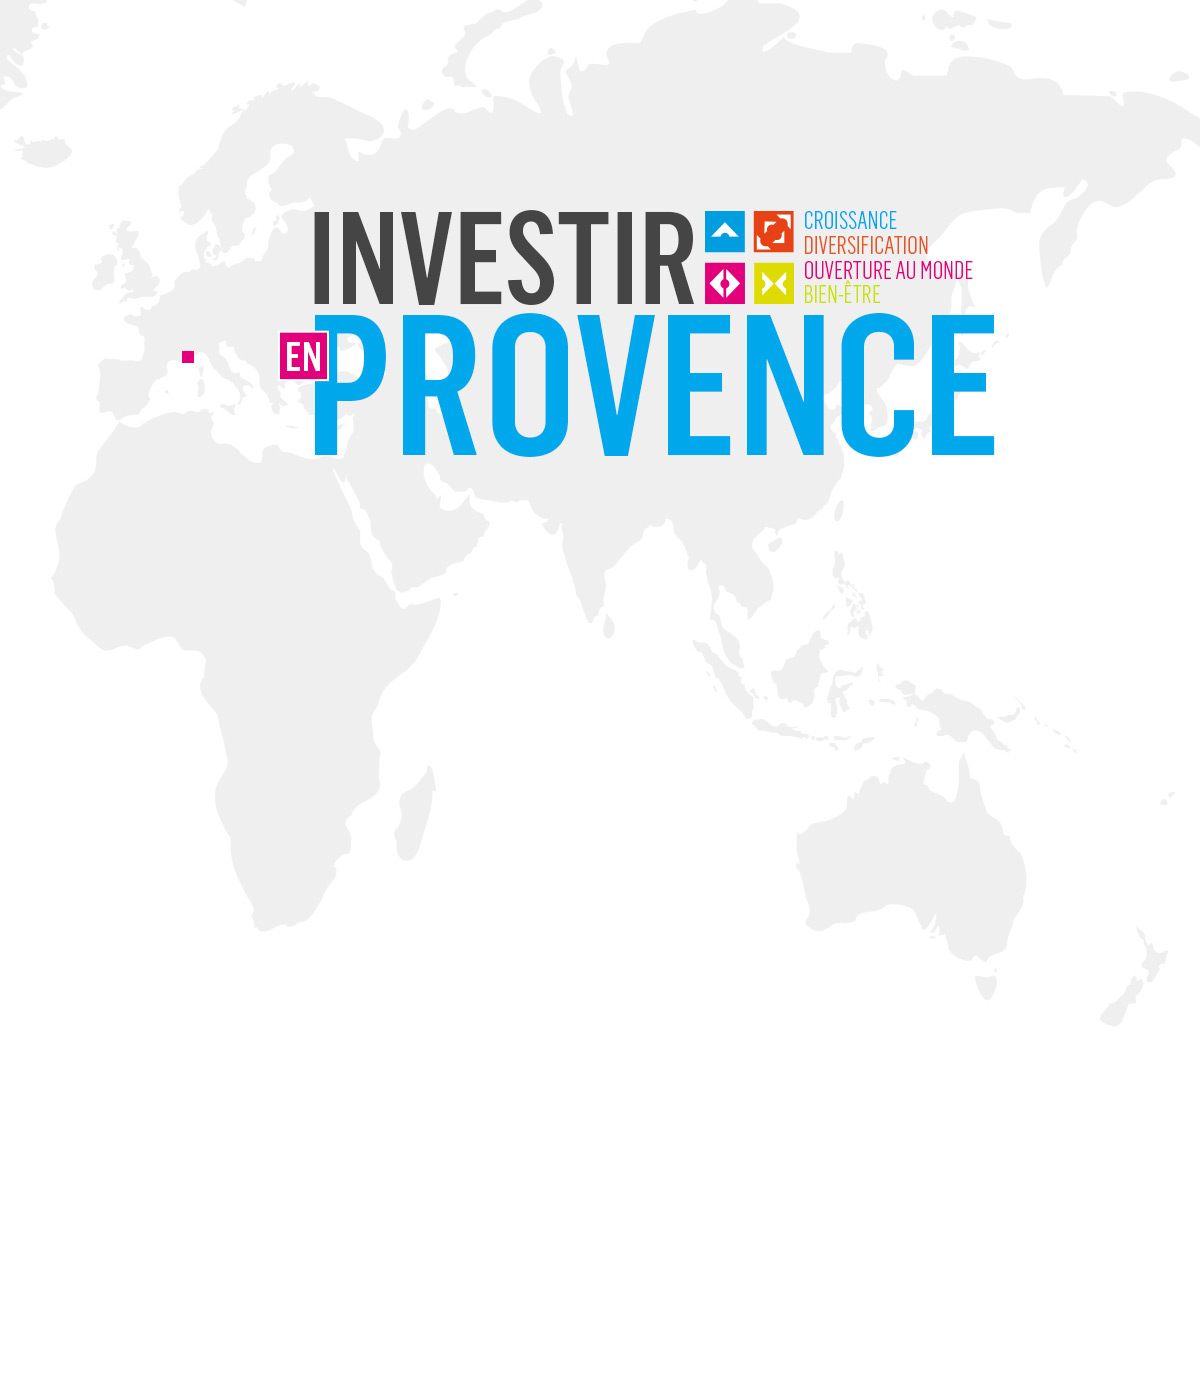 Les entreprises qui choisissent Aix-Marseille Provence le font pour la croissance, la diversification, l'ouverture au monde et pour le bien-être de leurs collaborateurs.